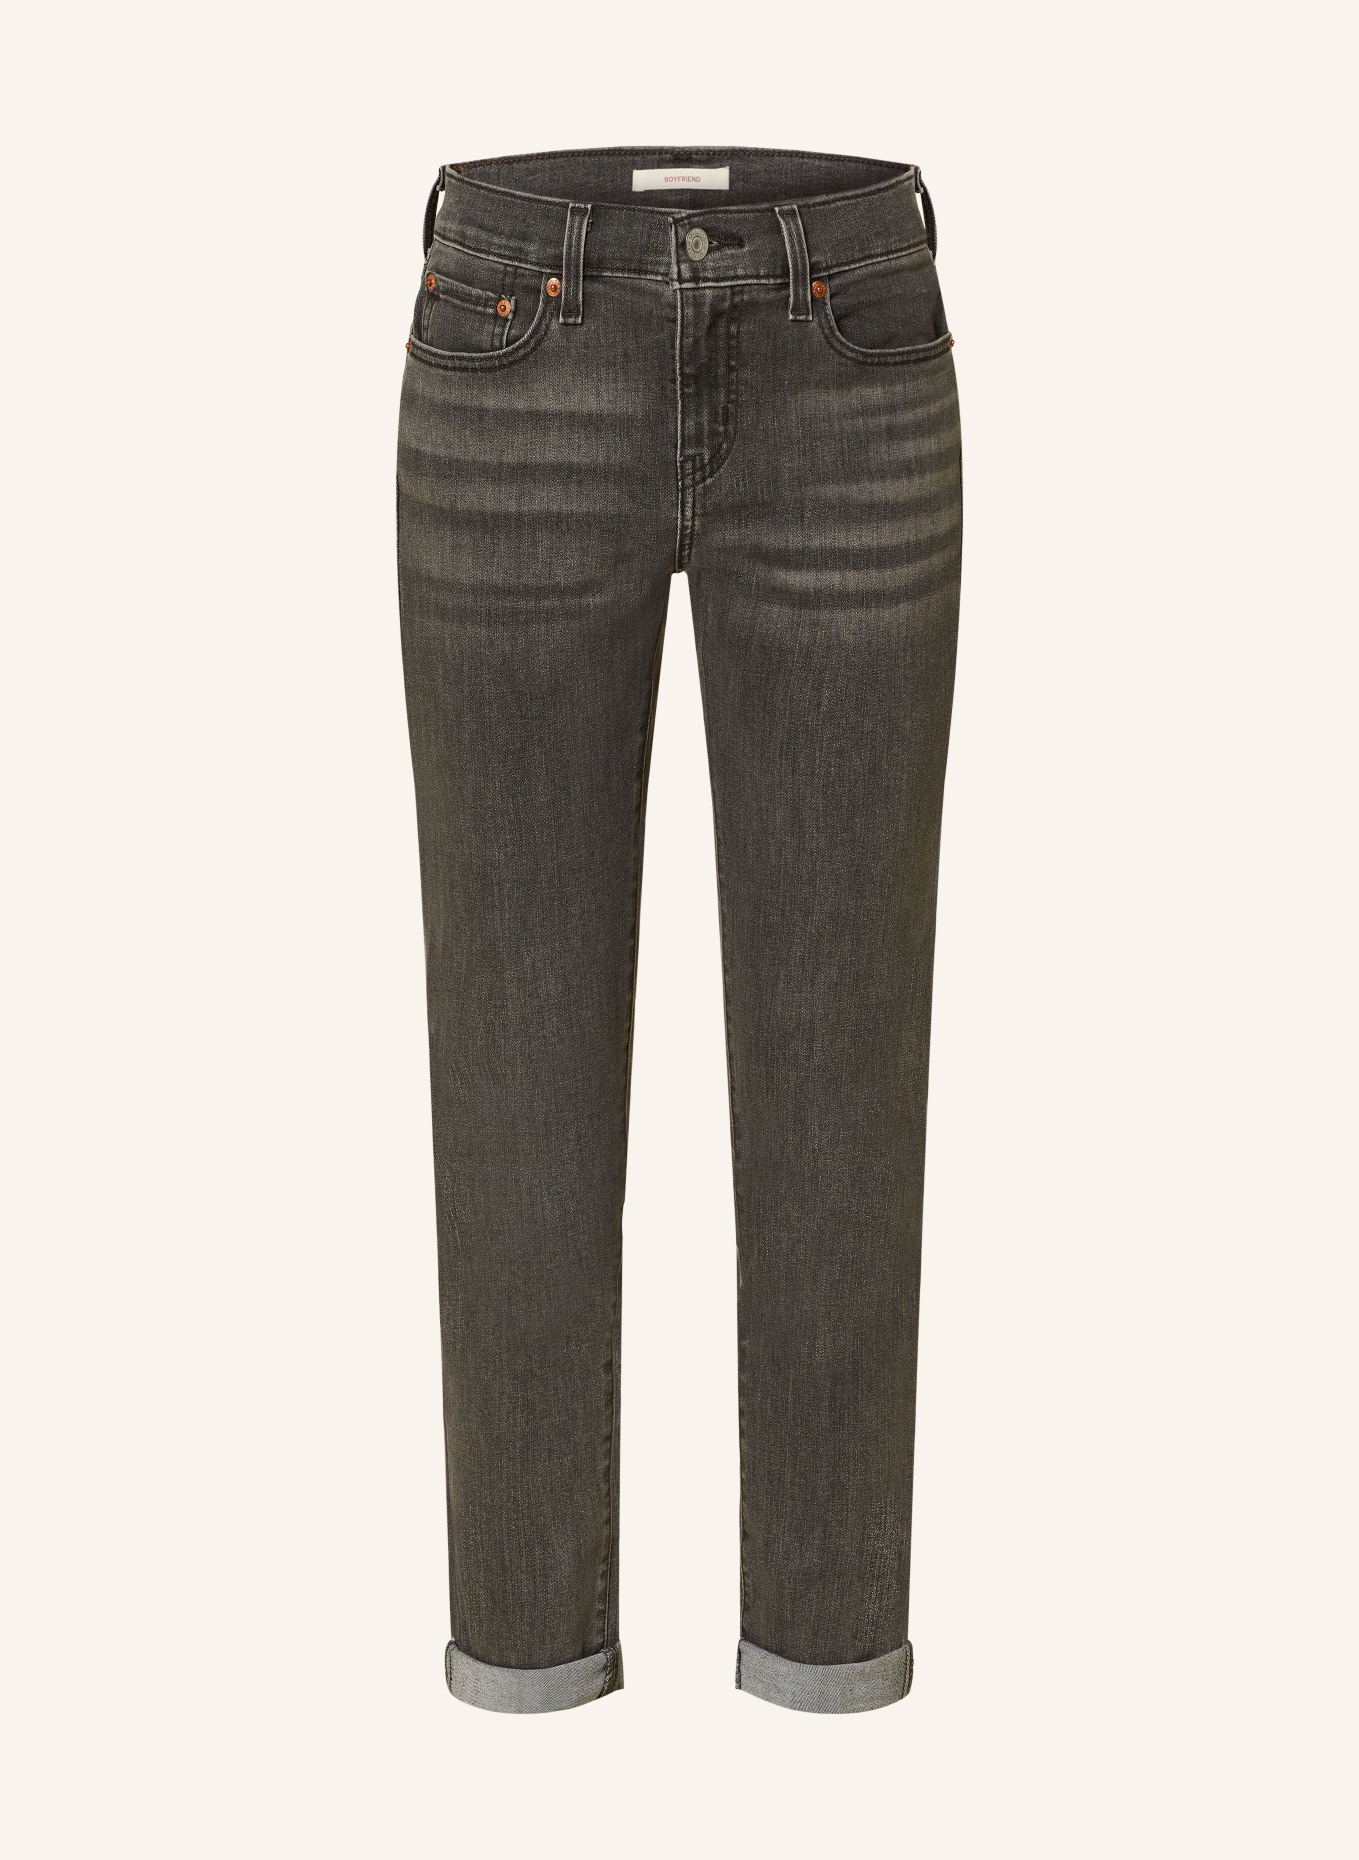 Levi's® Boyfriend jeans, Color: 42 Blacks (Image 1)